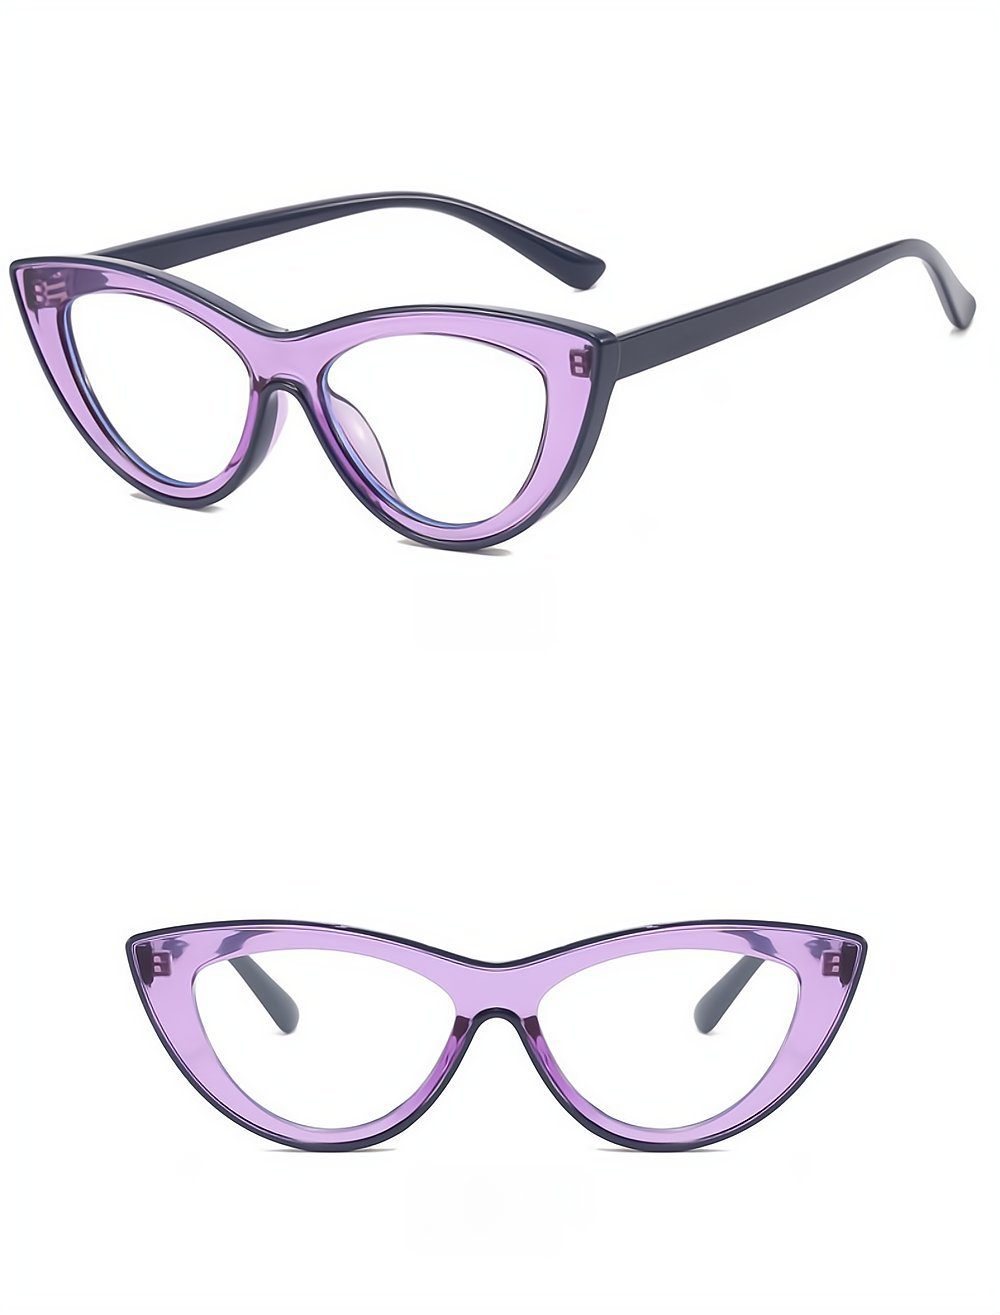 PACIEA Brille Cat EyeTransparente Blaulichtfilter Gaming Anti-Müdigkeit UV Schutz lila